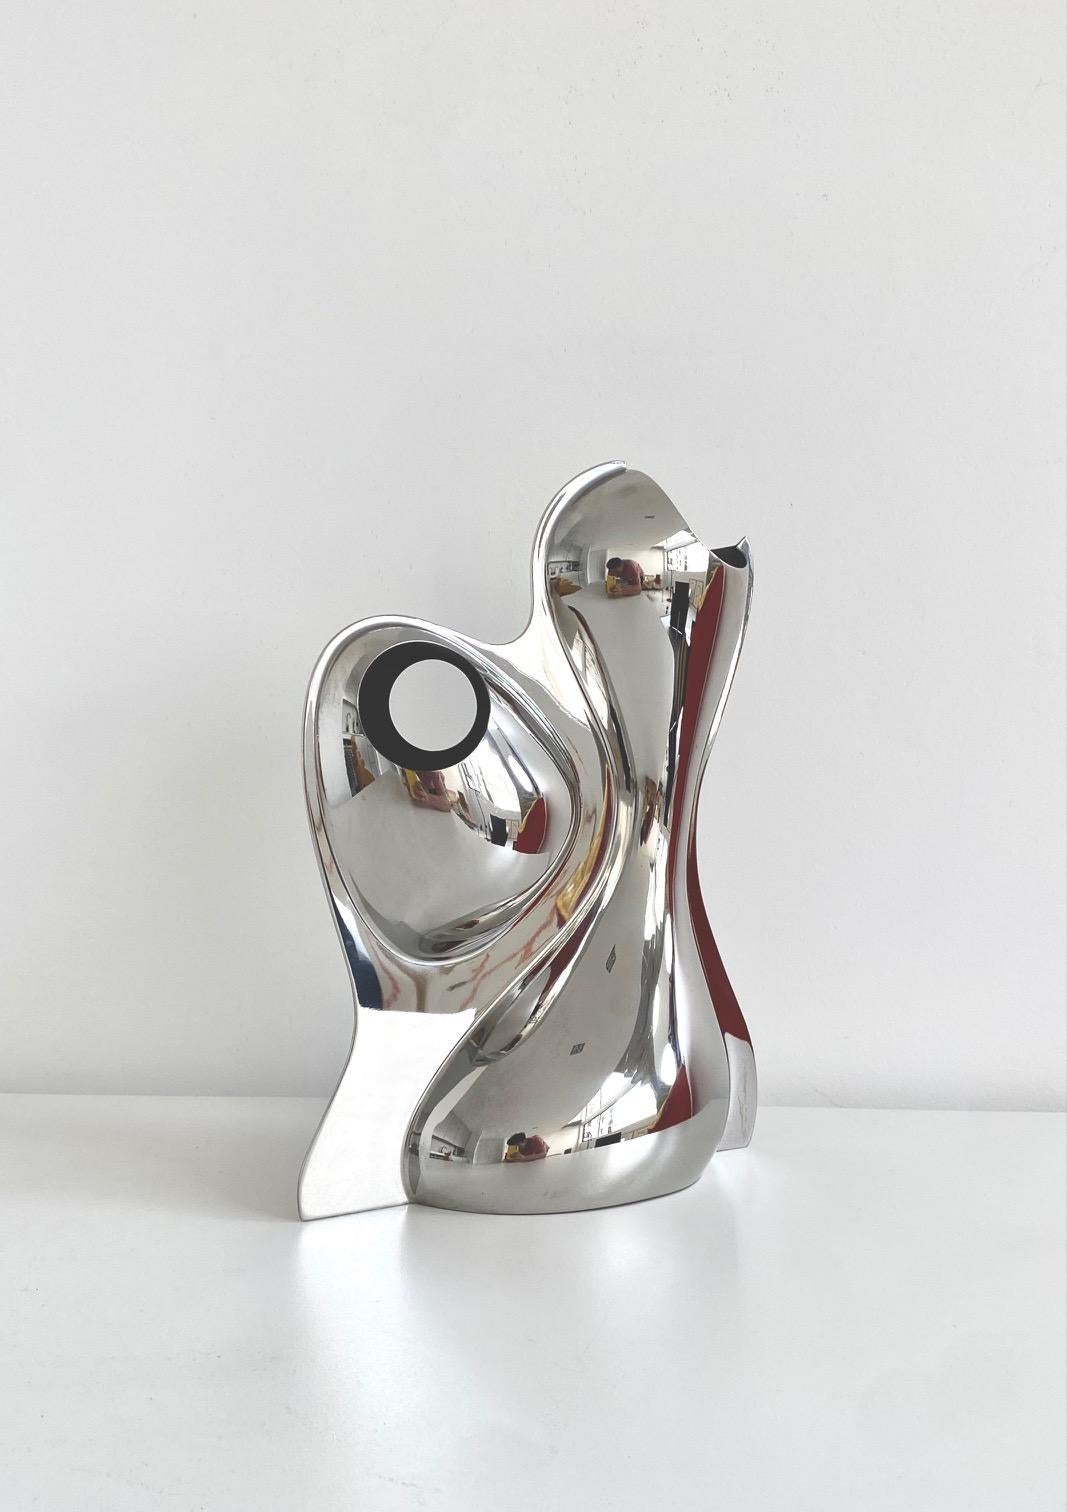 
Vase sculpture Babyboop RA06 de Ron Arad - Alessi, 2002

Ce vase n'est plus en production

